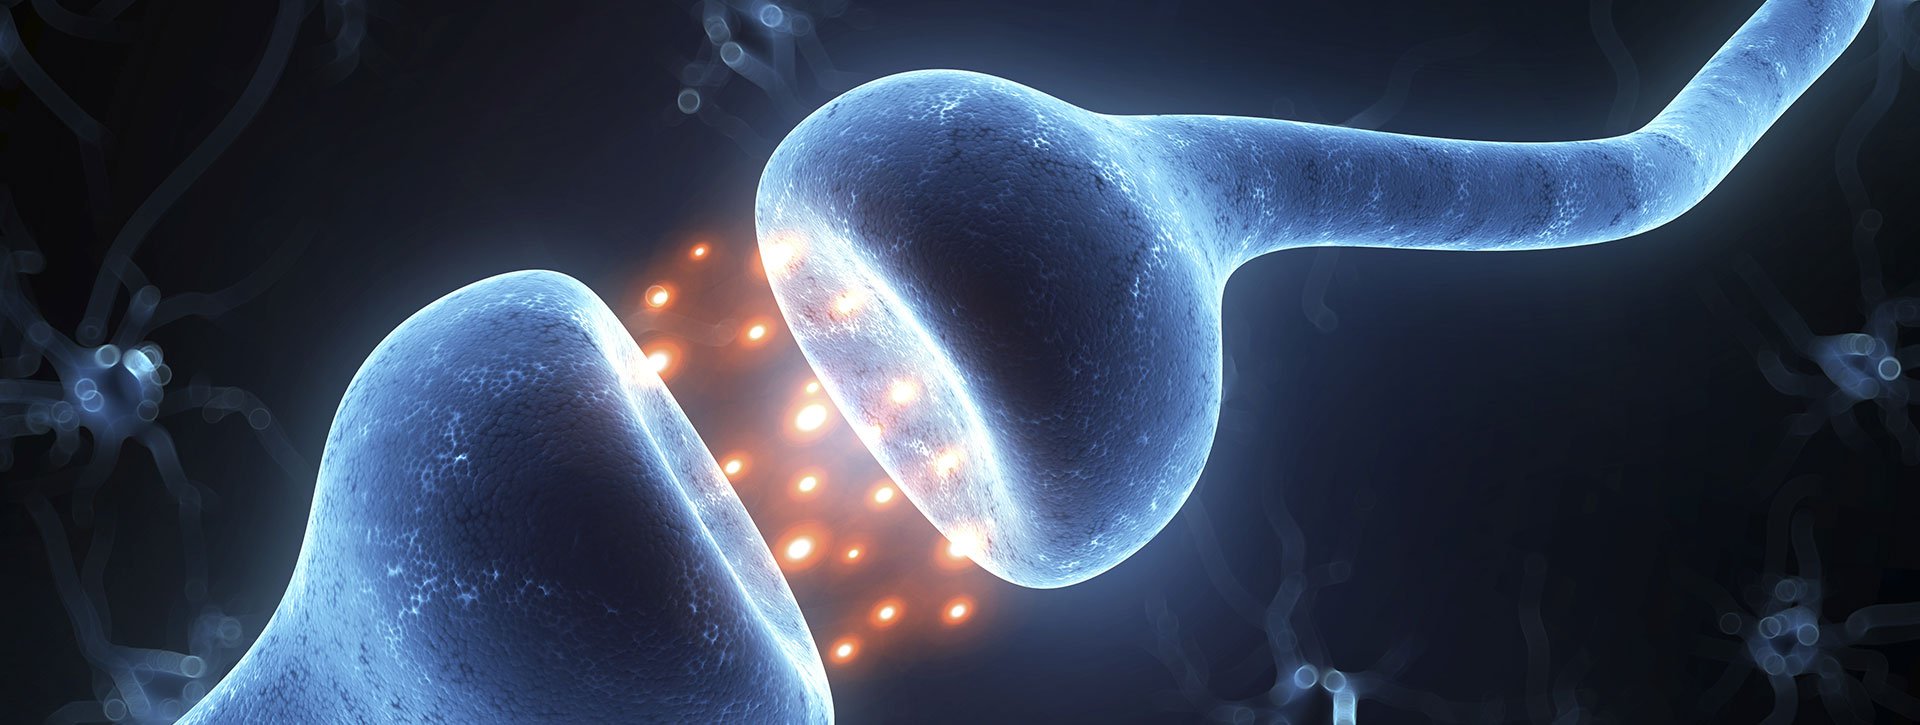 Η θεραπεία ορμονικής υποκατάστασης συμβάλλει στην όξυνση της μνήμης